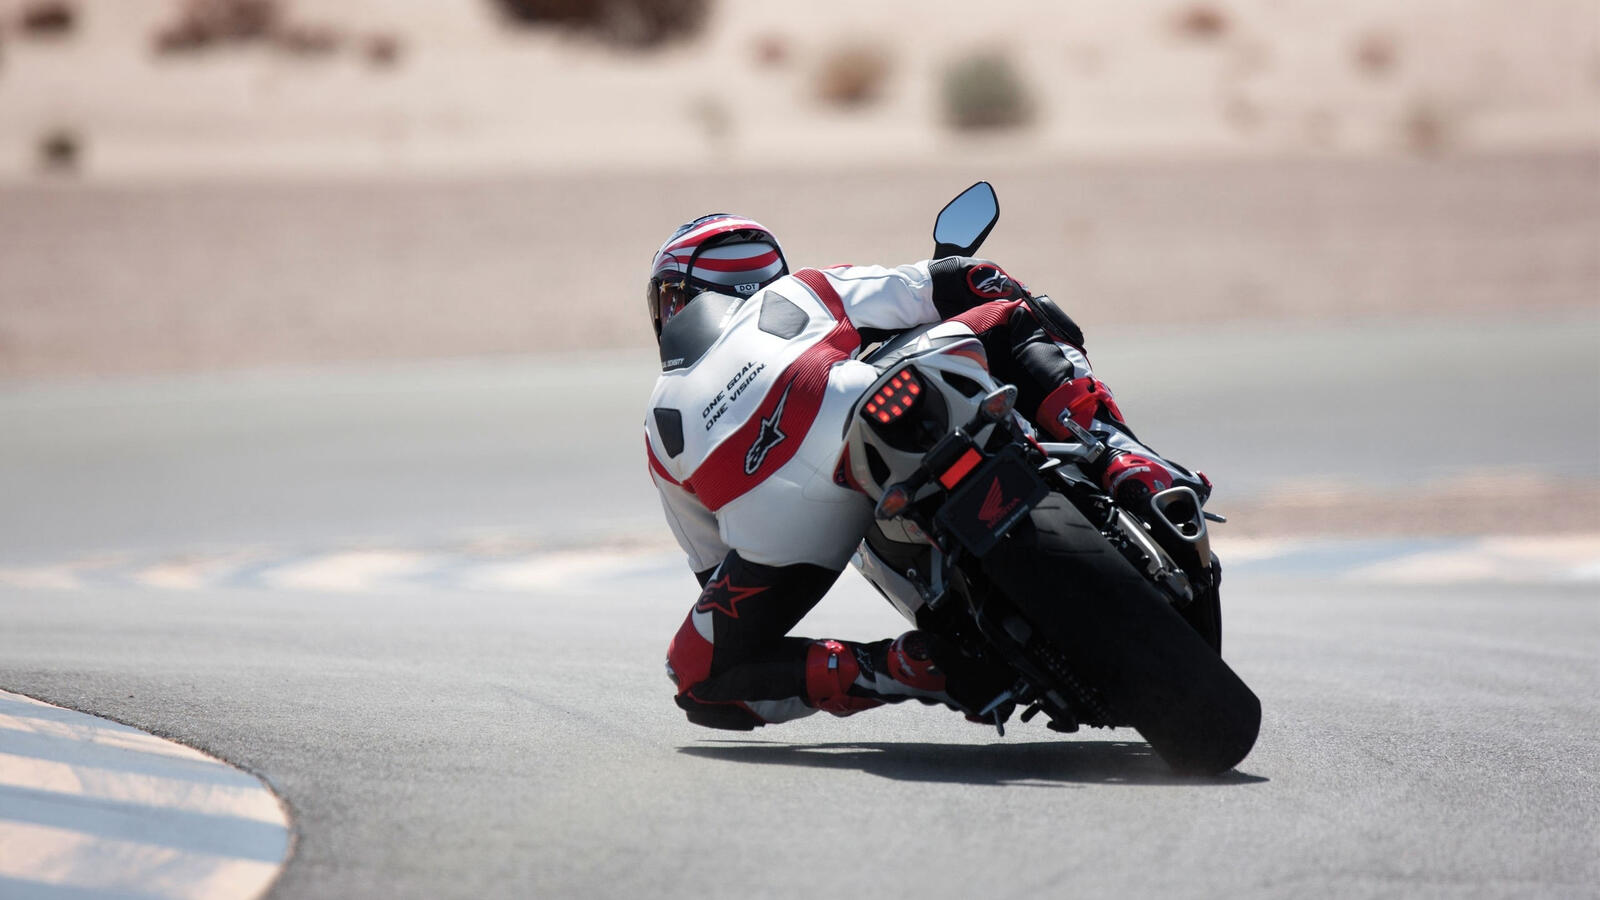 Wallpapers race sportbike motorcyclist on the desktop